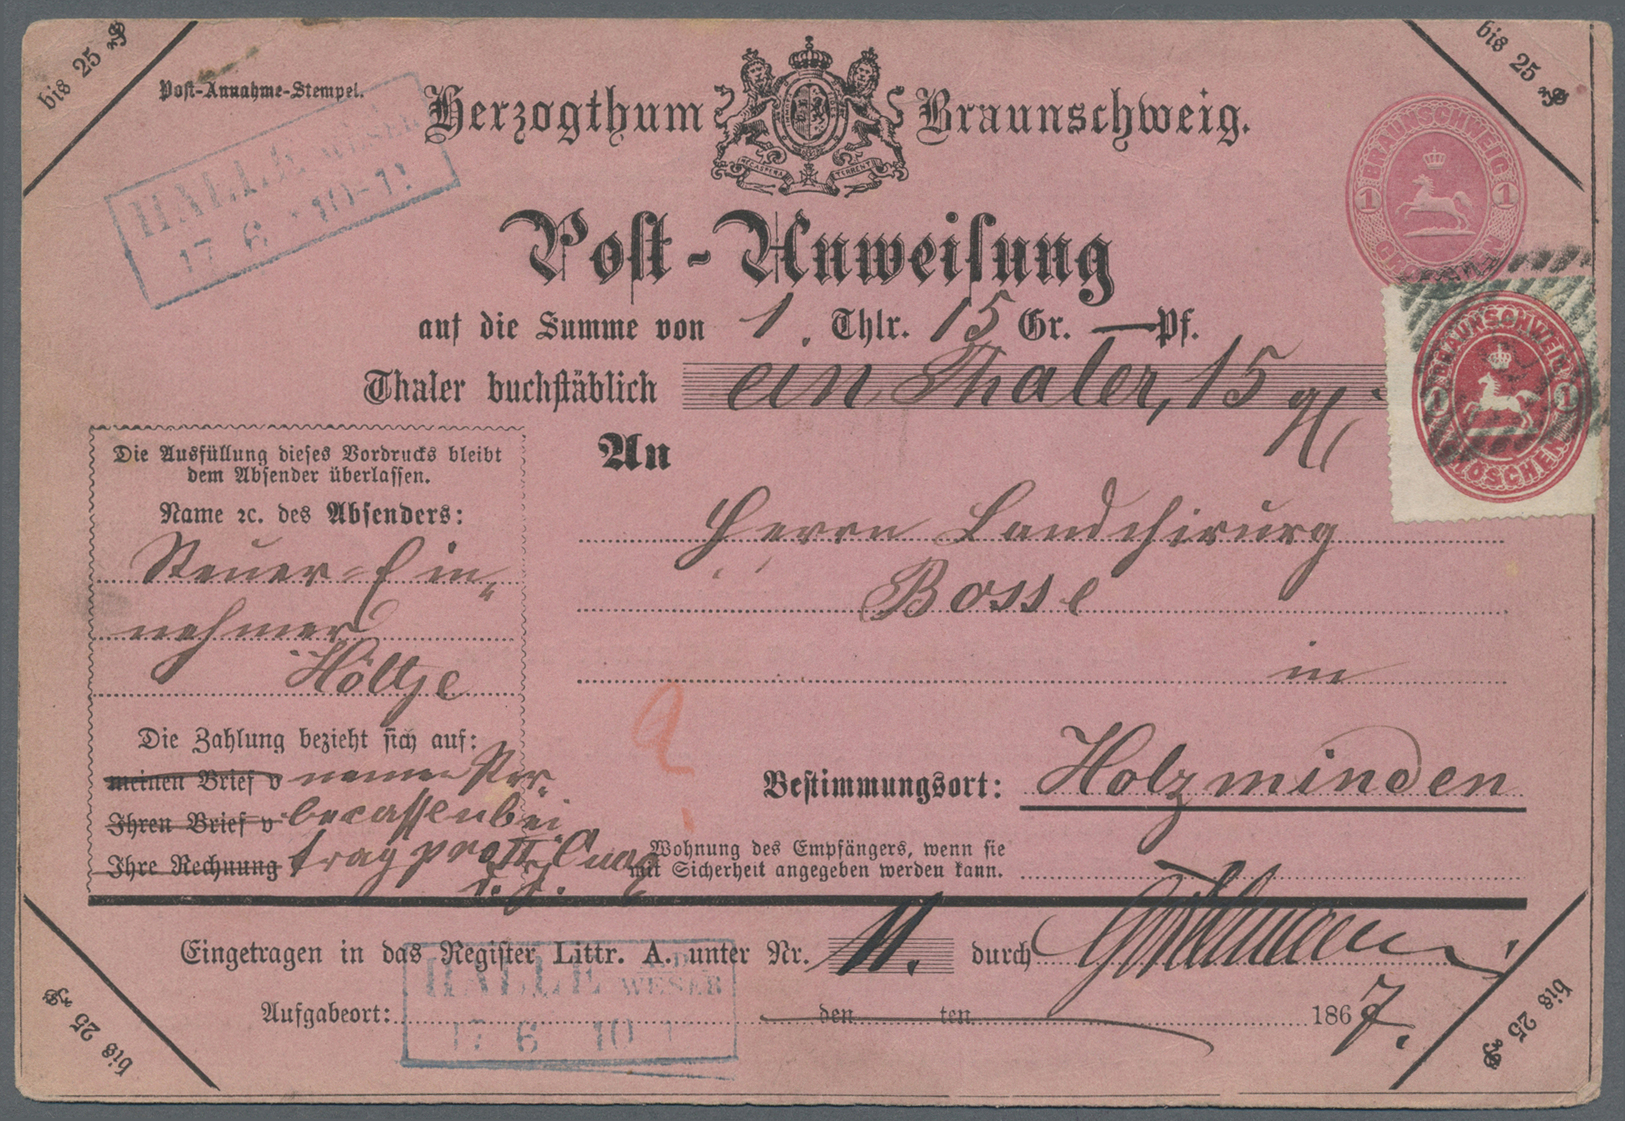 GA Braunschweig - Ganzsachen: 1865, Postanweisung 1 Gr. Karmin Mit Zusatzfrankatur Ovalausgabe 1 Gr. (E - Braunschweig